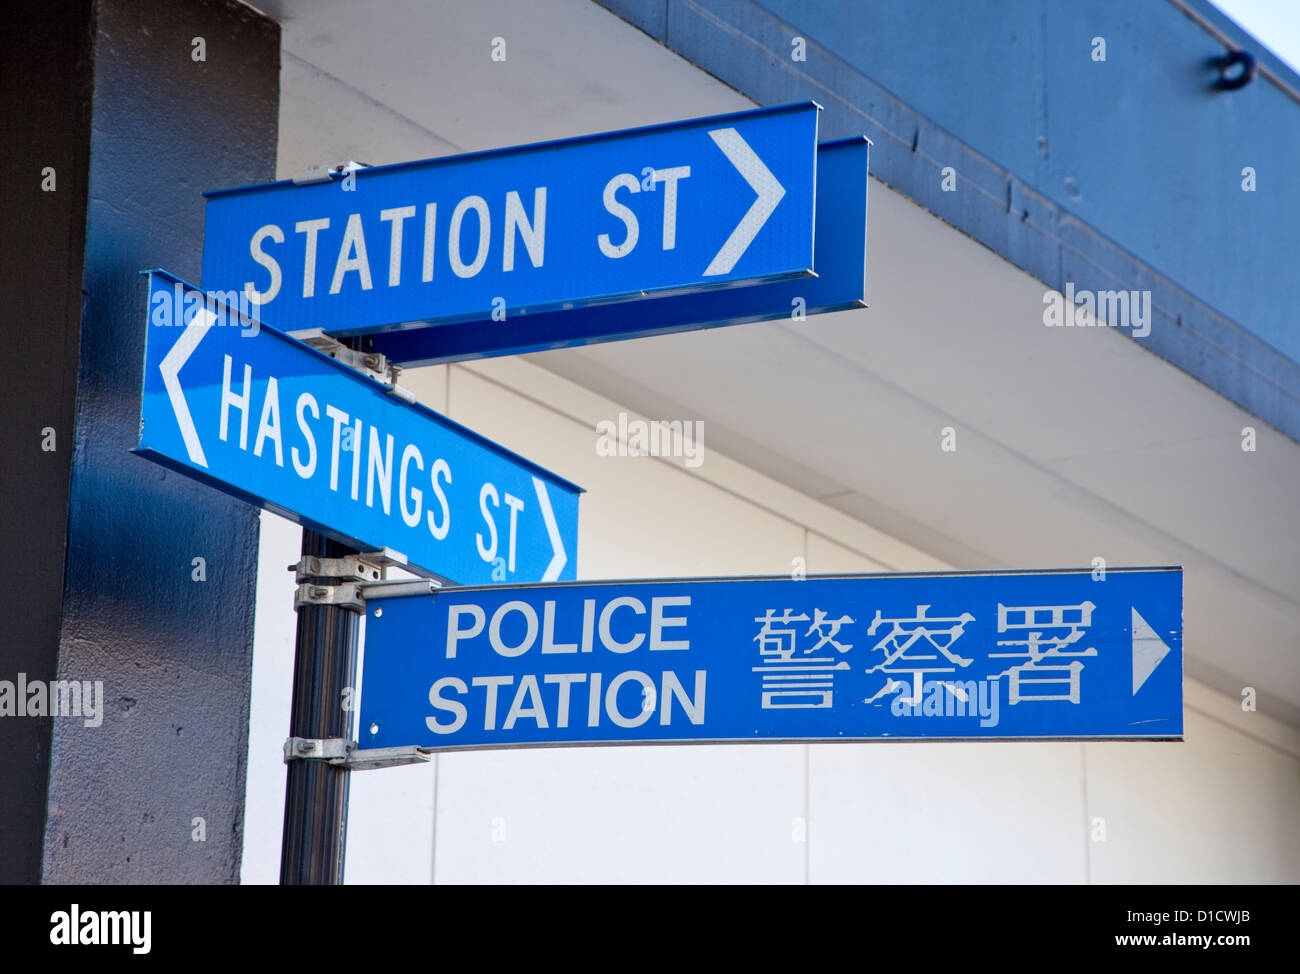 Caractères chinois sur les plaques de rue, Nouvelle-Zélande Napier, île du nord, en Nouvelle-Zélande. Banque D'Images